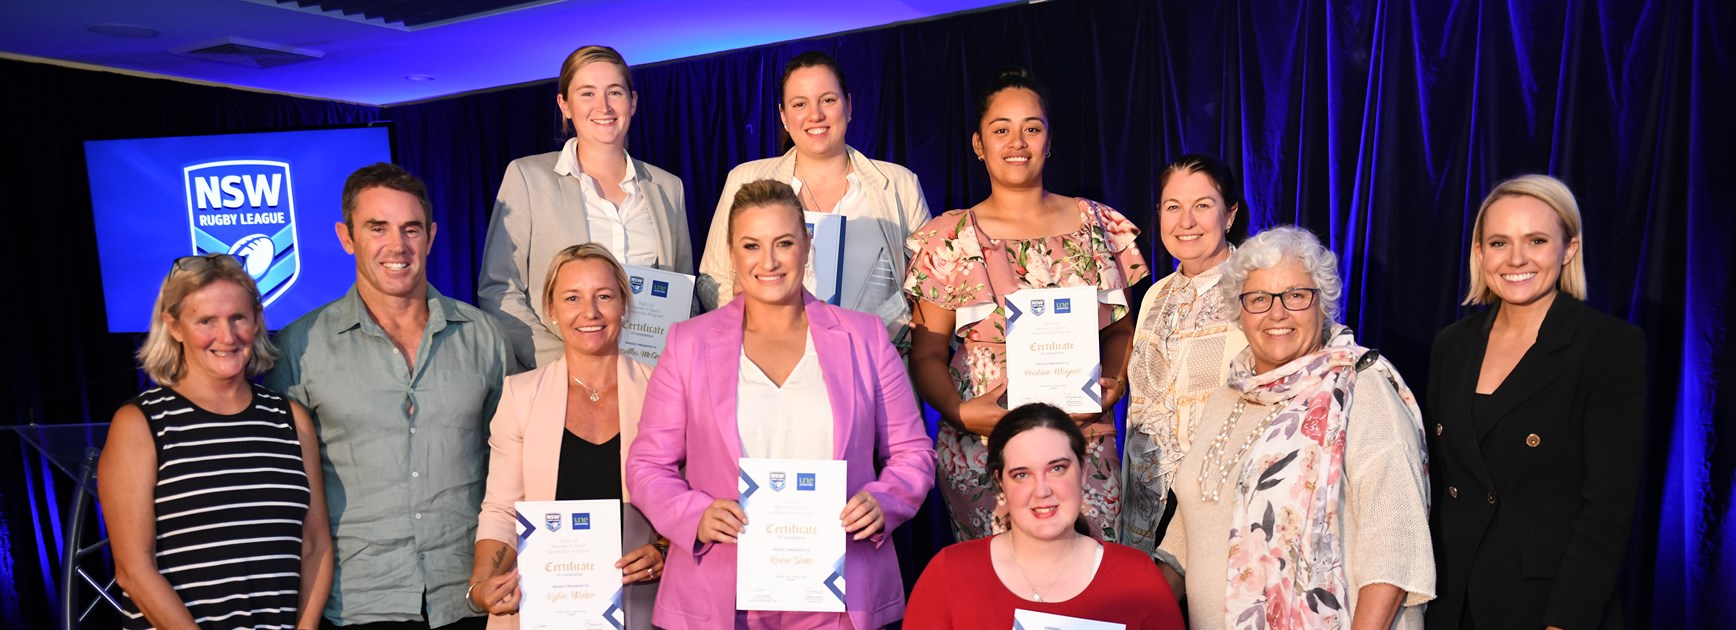 NSWRL's women's leadership program appeals to all sports